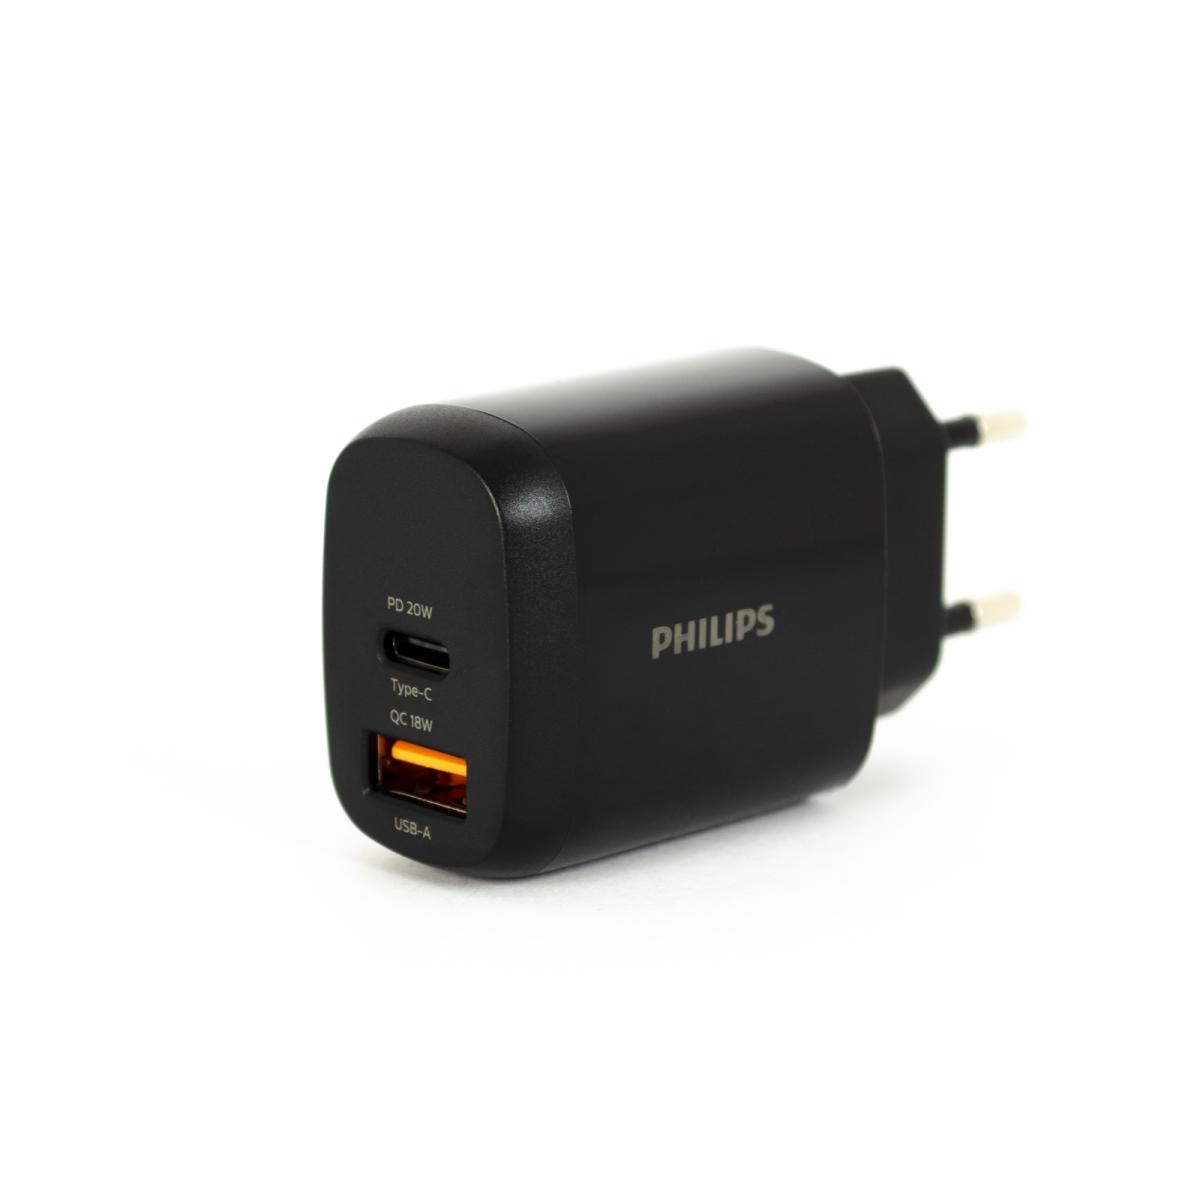 Philips DLP4326 Universal Type-C Kablolu 20 W Hızlı Şarj Aleti Siyah